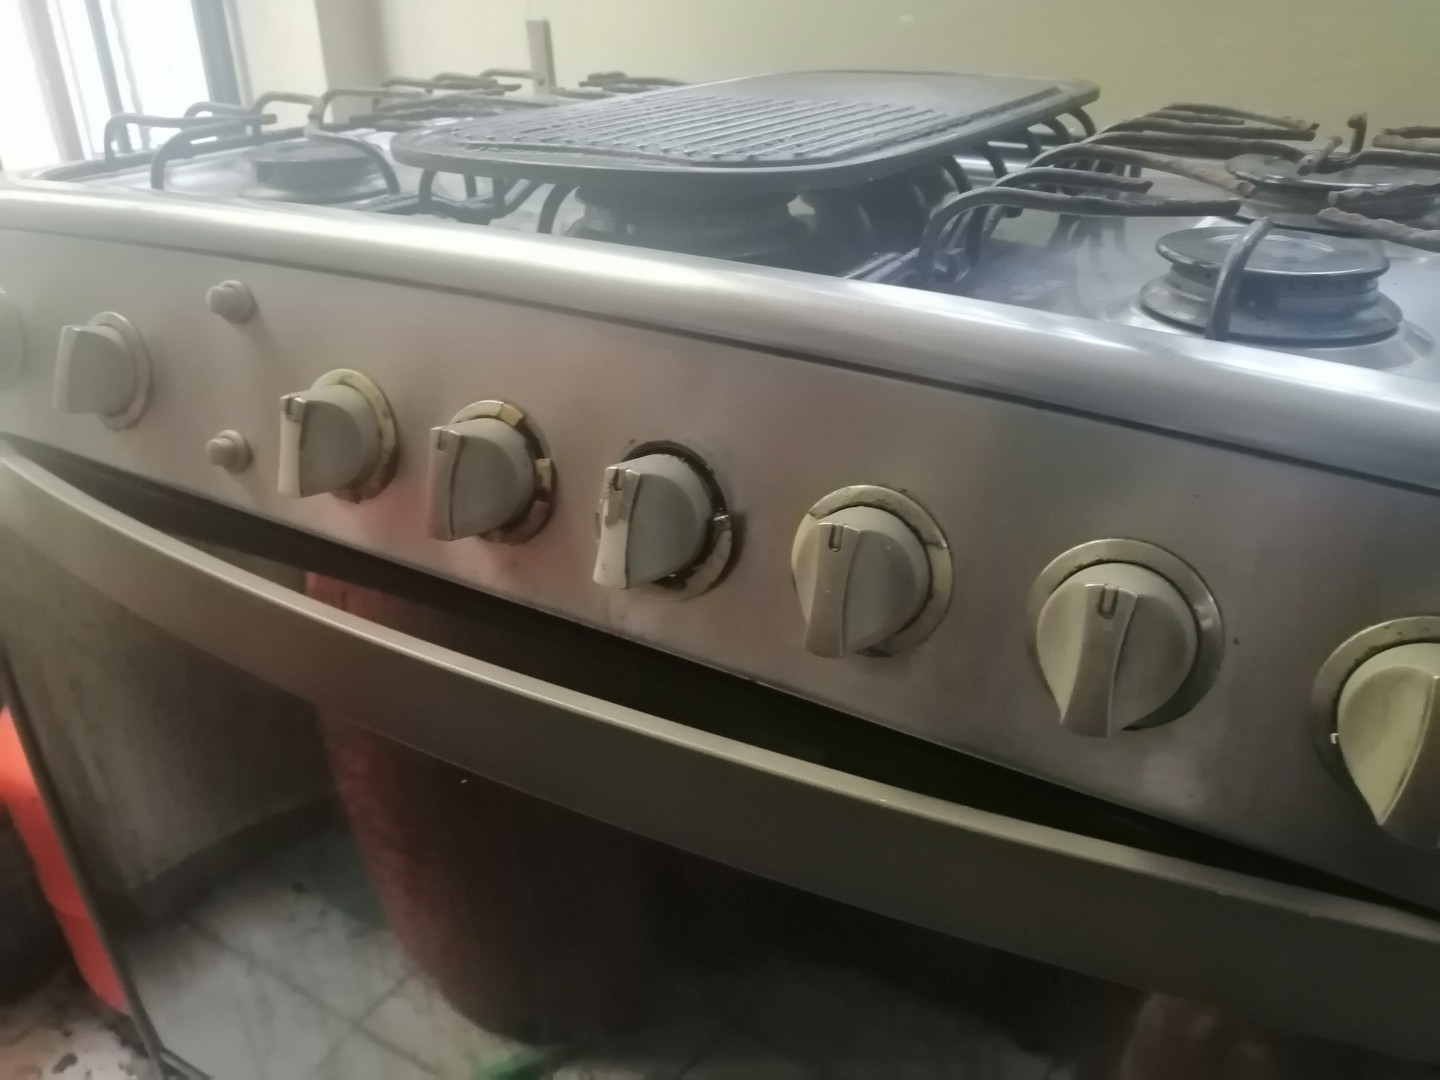 electrodomesticos - Estufa INDURAMA de 6 hornillas con horno y grill.  1